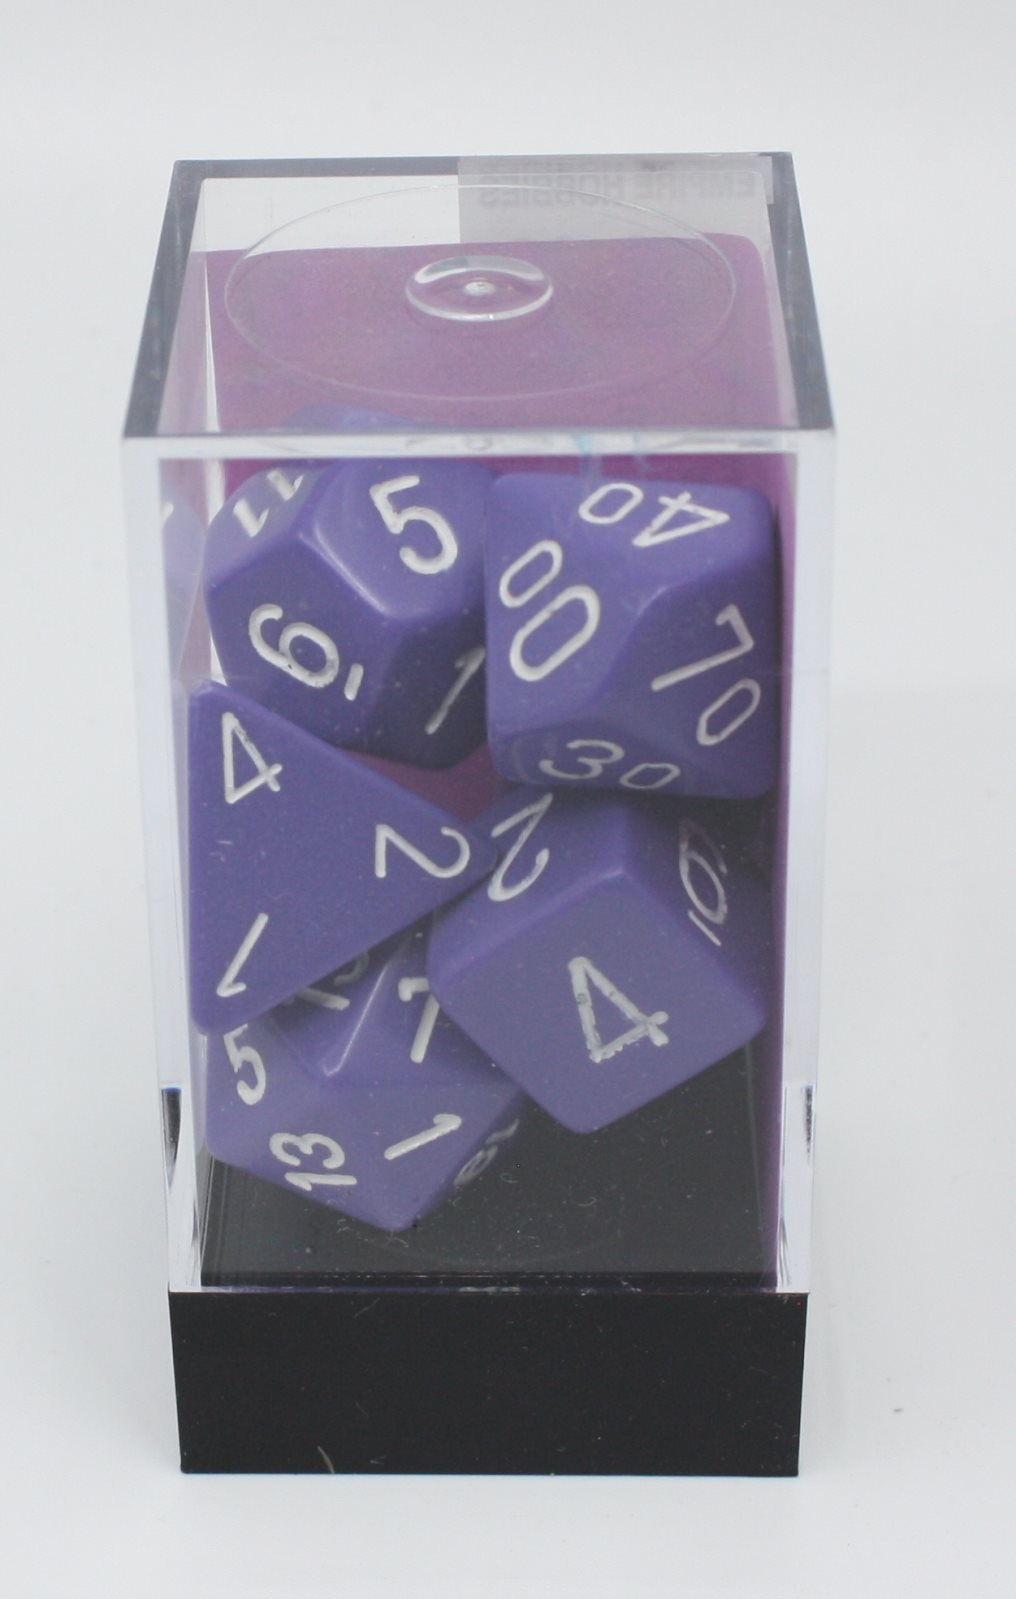 Chessex 25407 Opaque Purple/White Polyhedral 7-Die Set